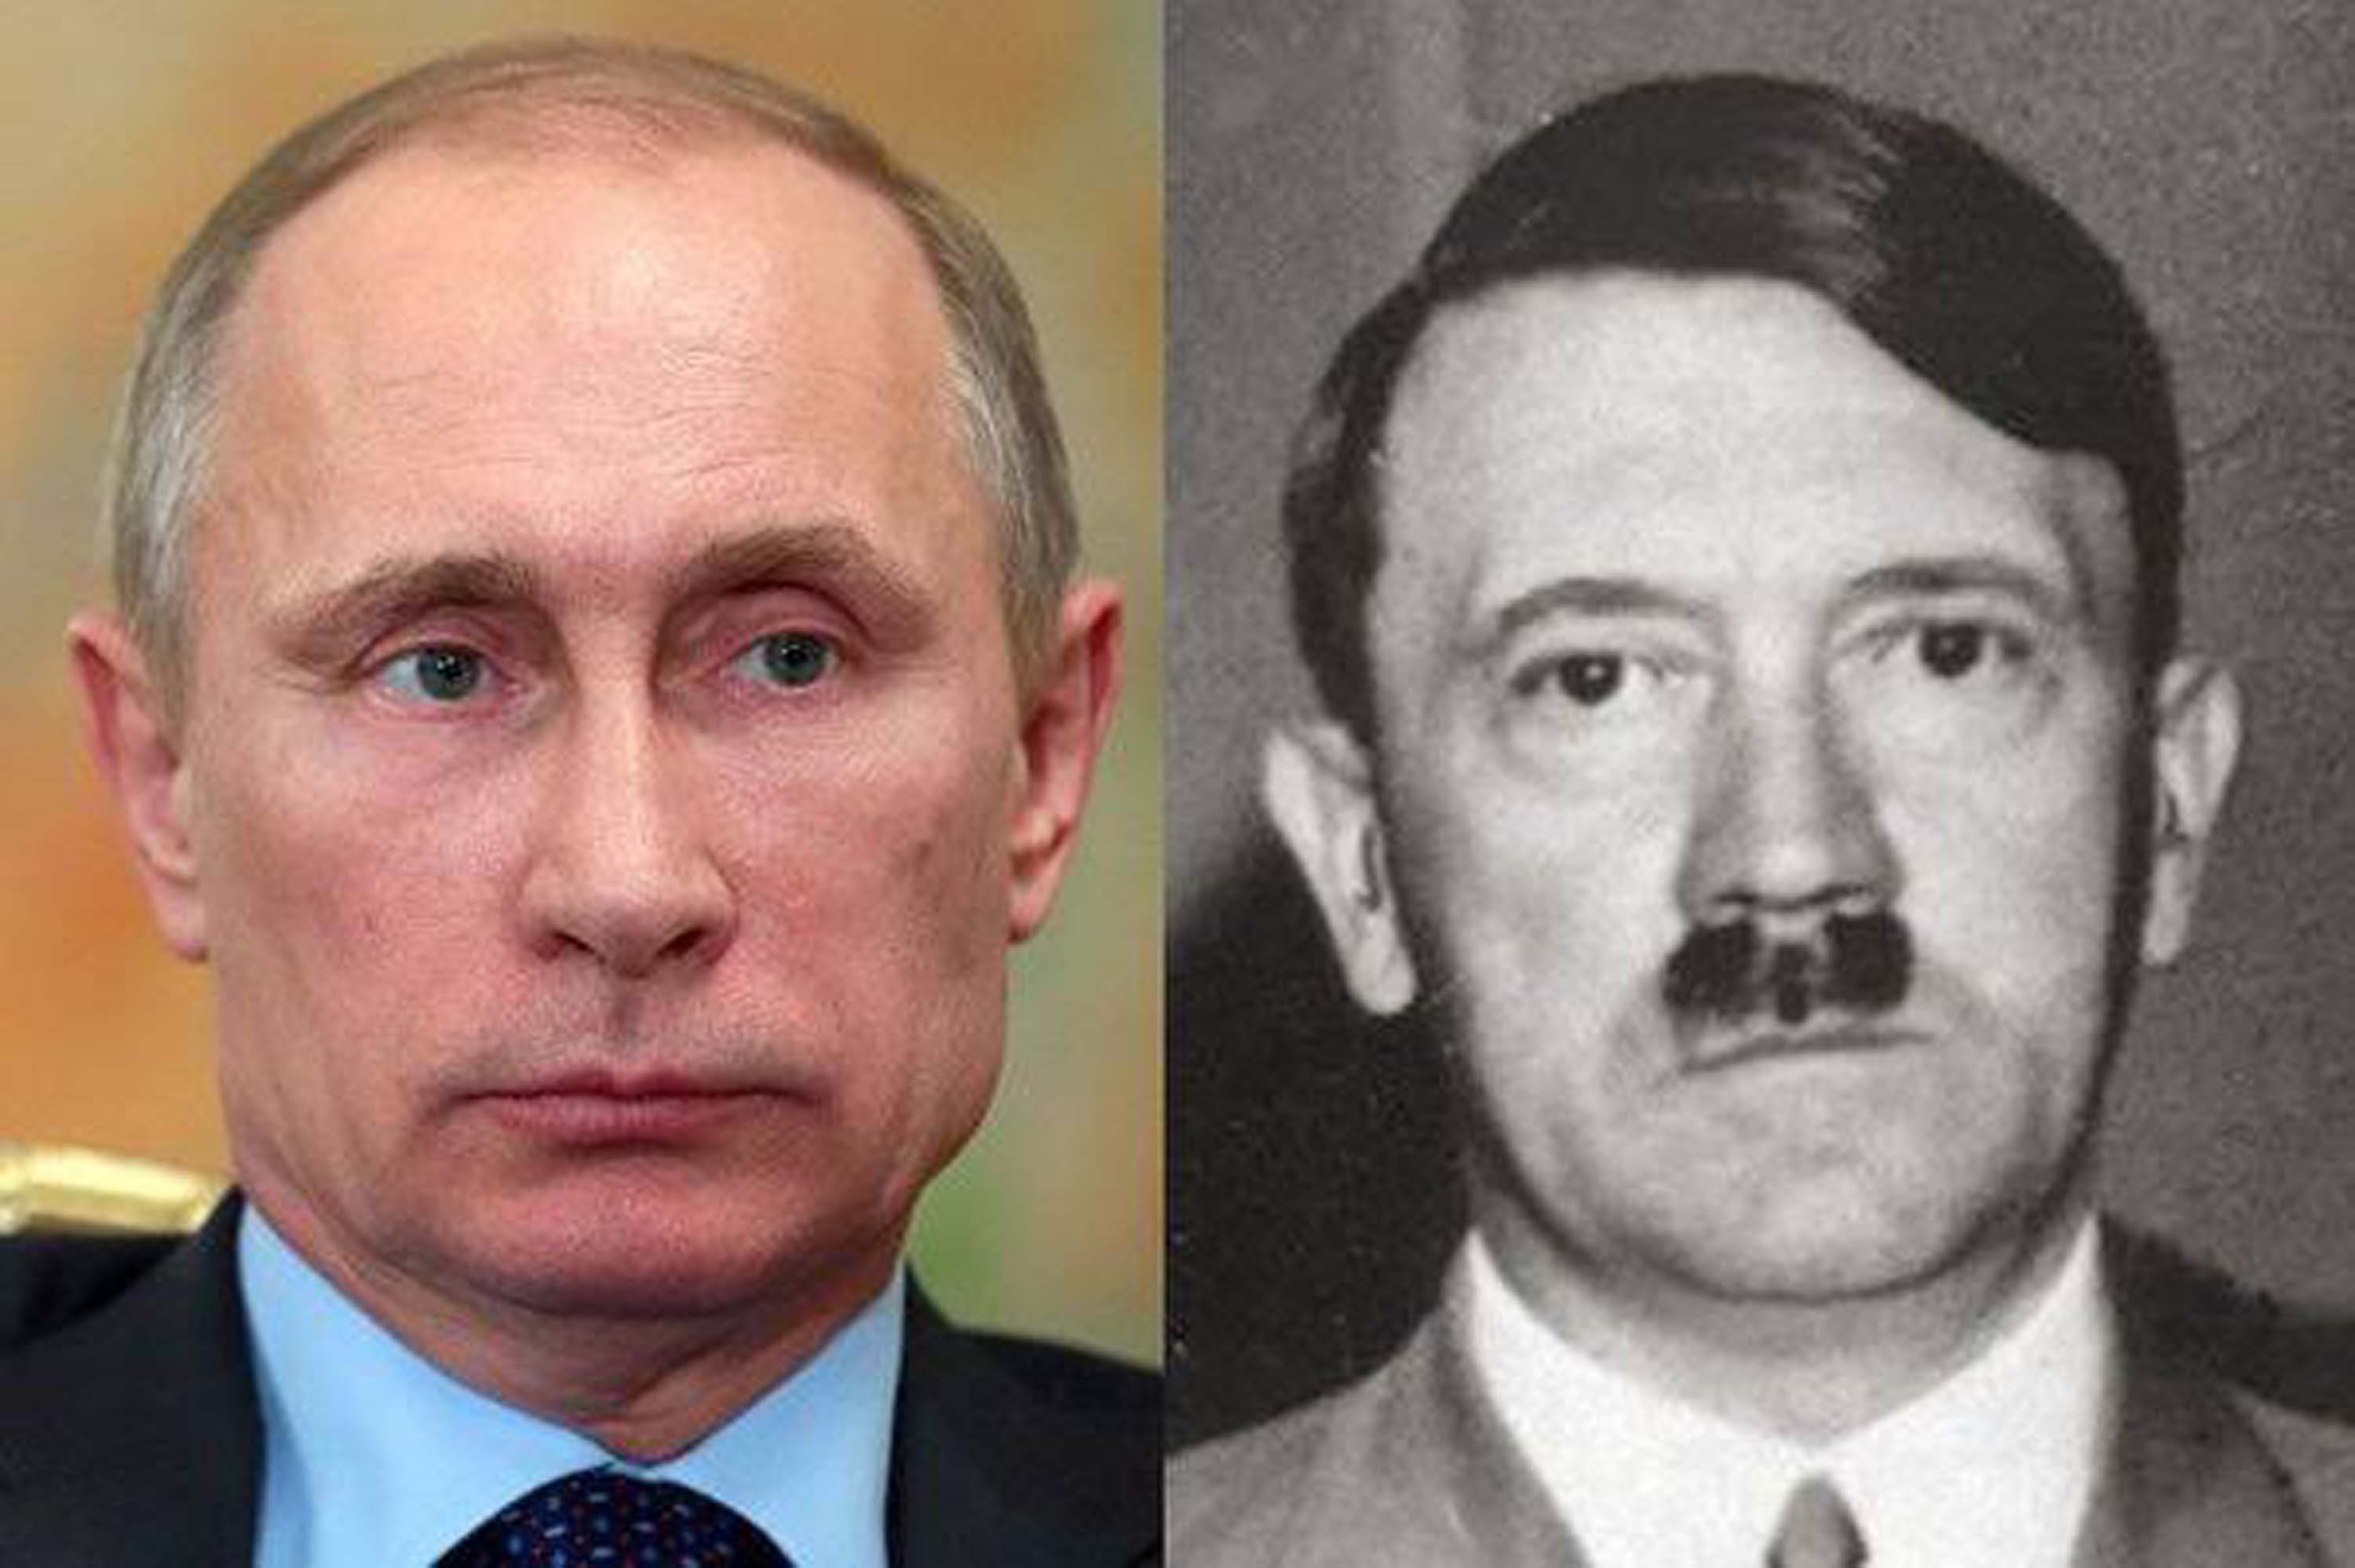 Hitler ile Putin karşılaştırması dünya gündeminde! Ukrayna'dan Putin'e bomba gibi Hitler göndermesi! Putin, 21. yüzyılın Hitler'idir!